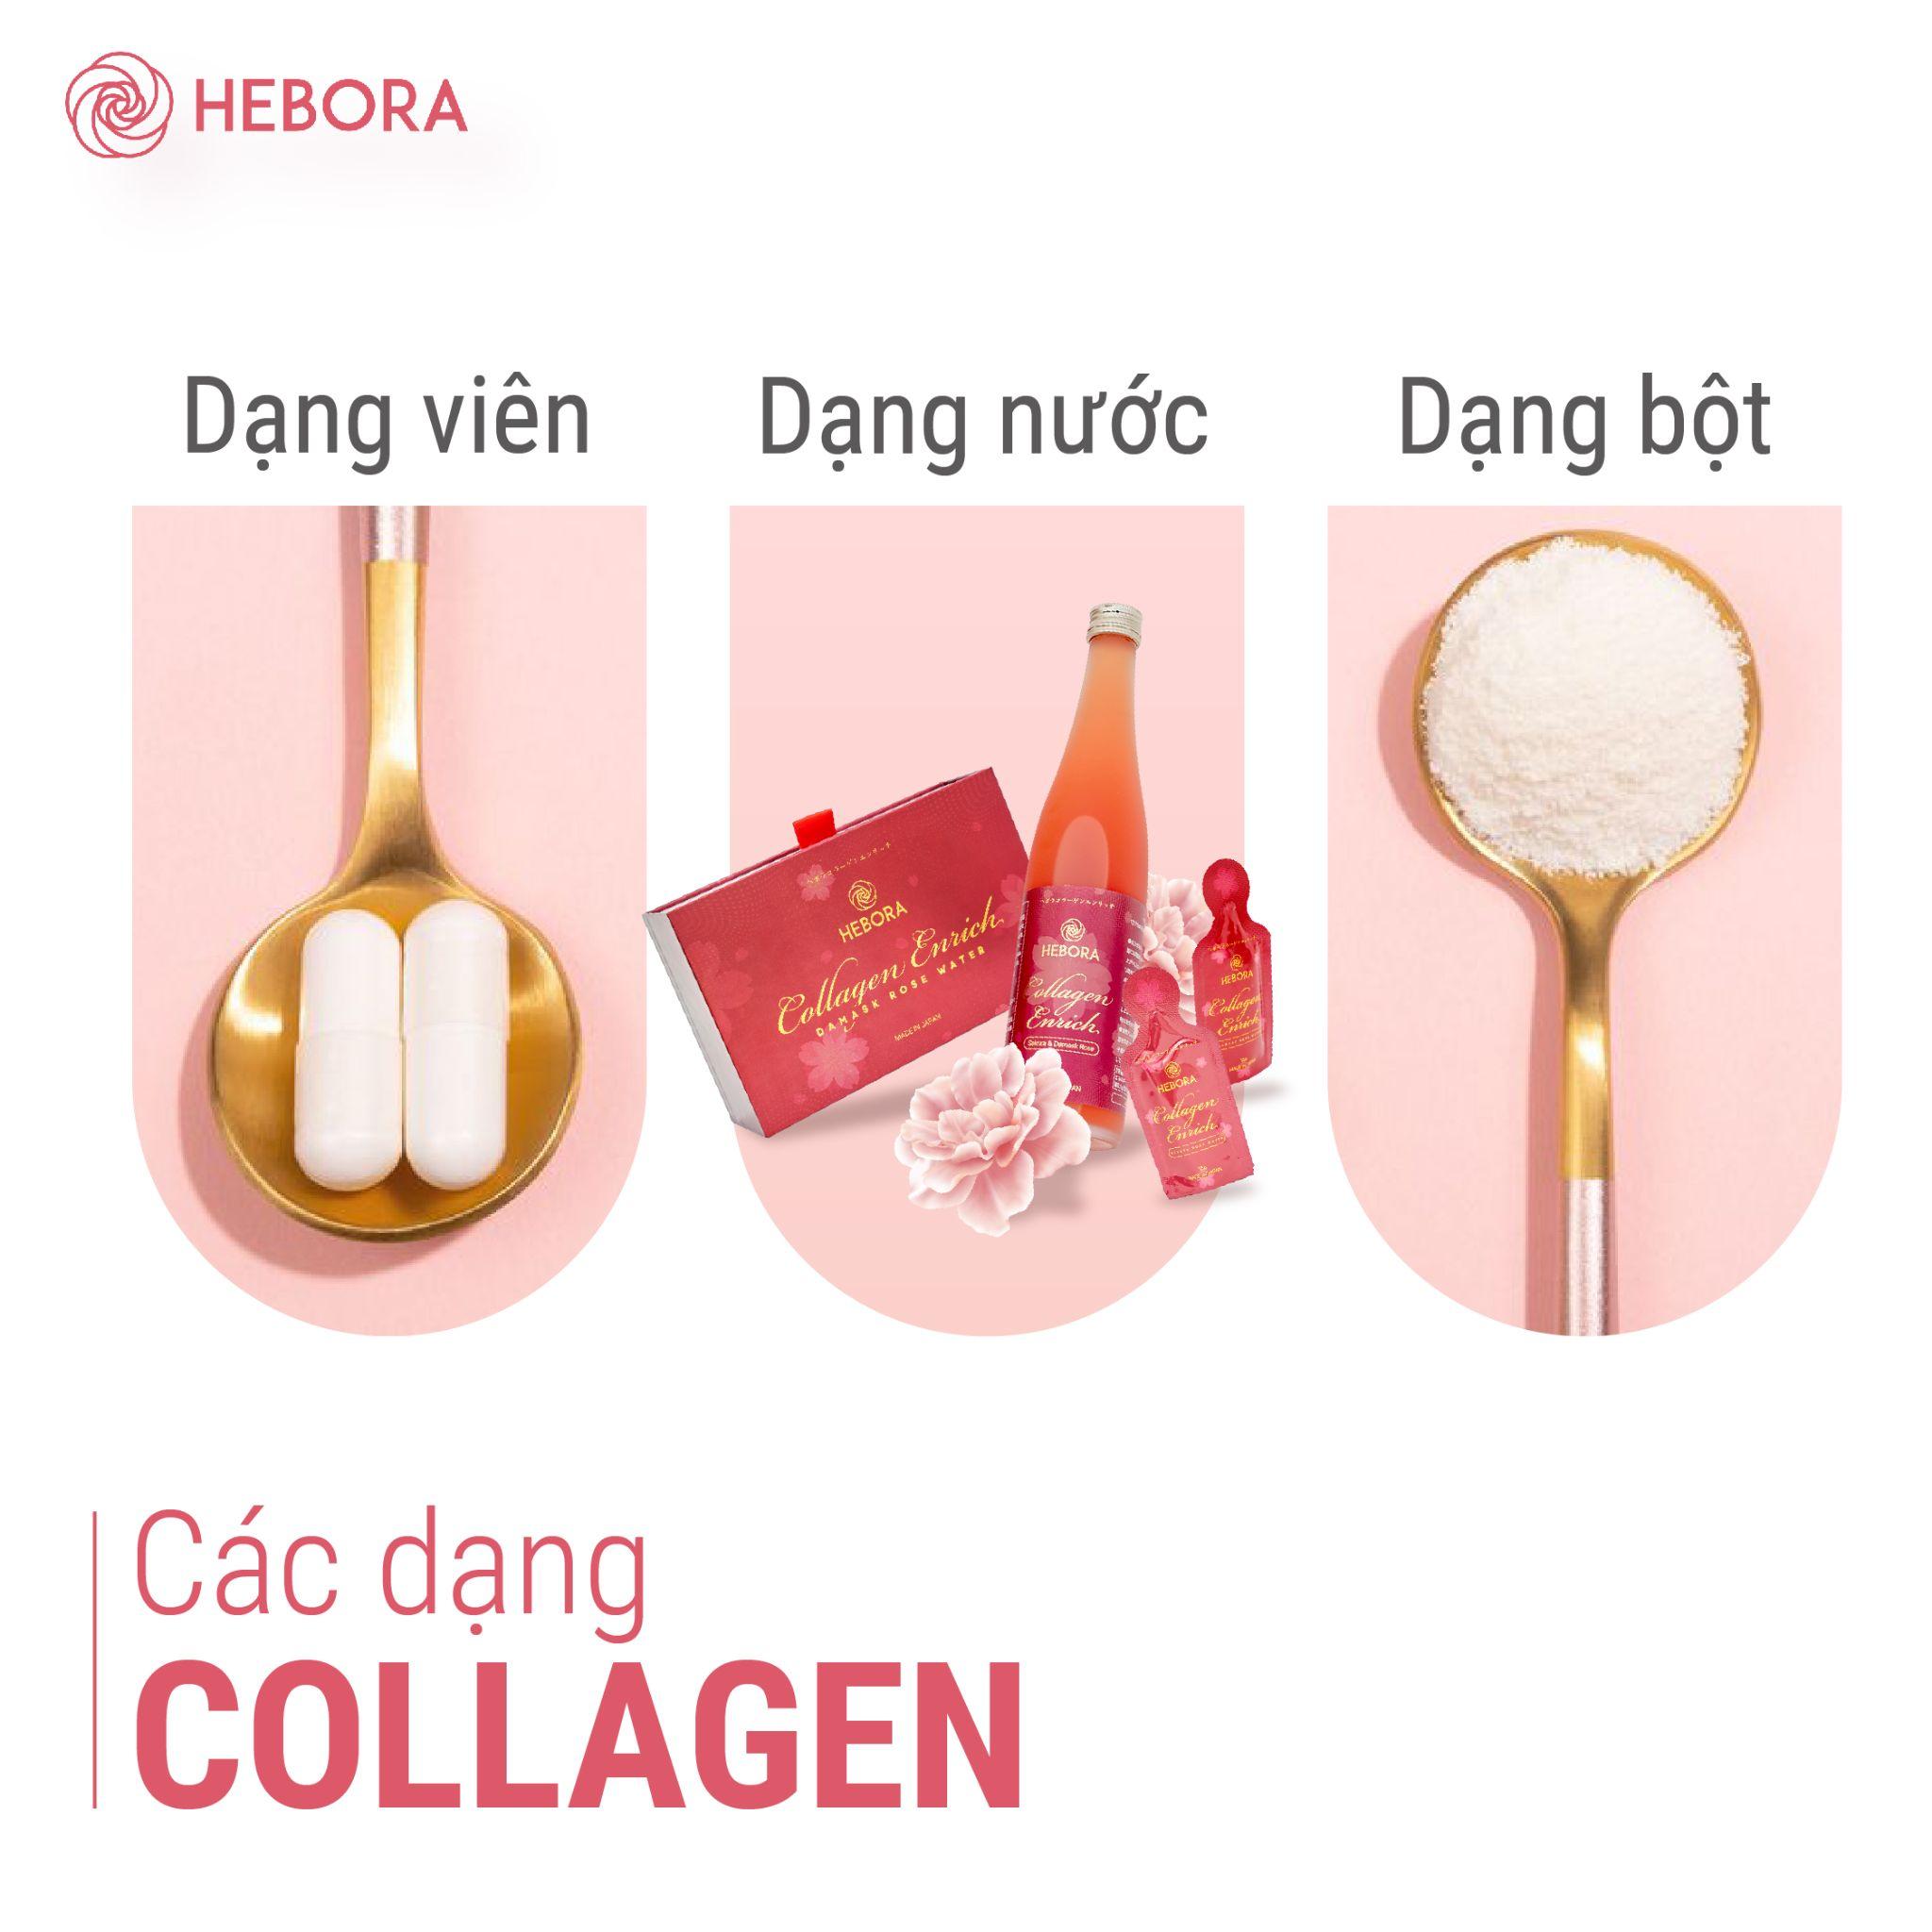 Hướng dẫn lựa chọn Collagen phù hợp để làn da luôn khỏe mạnh - 4